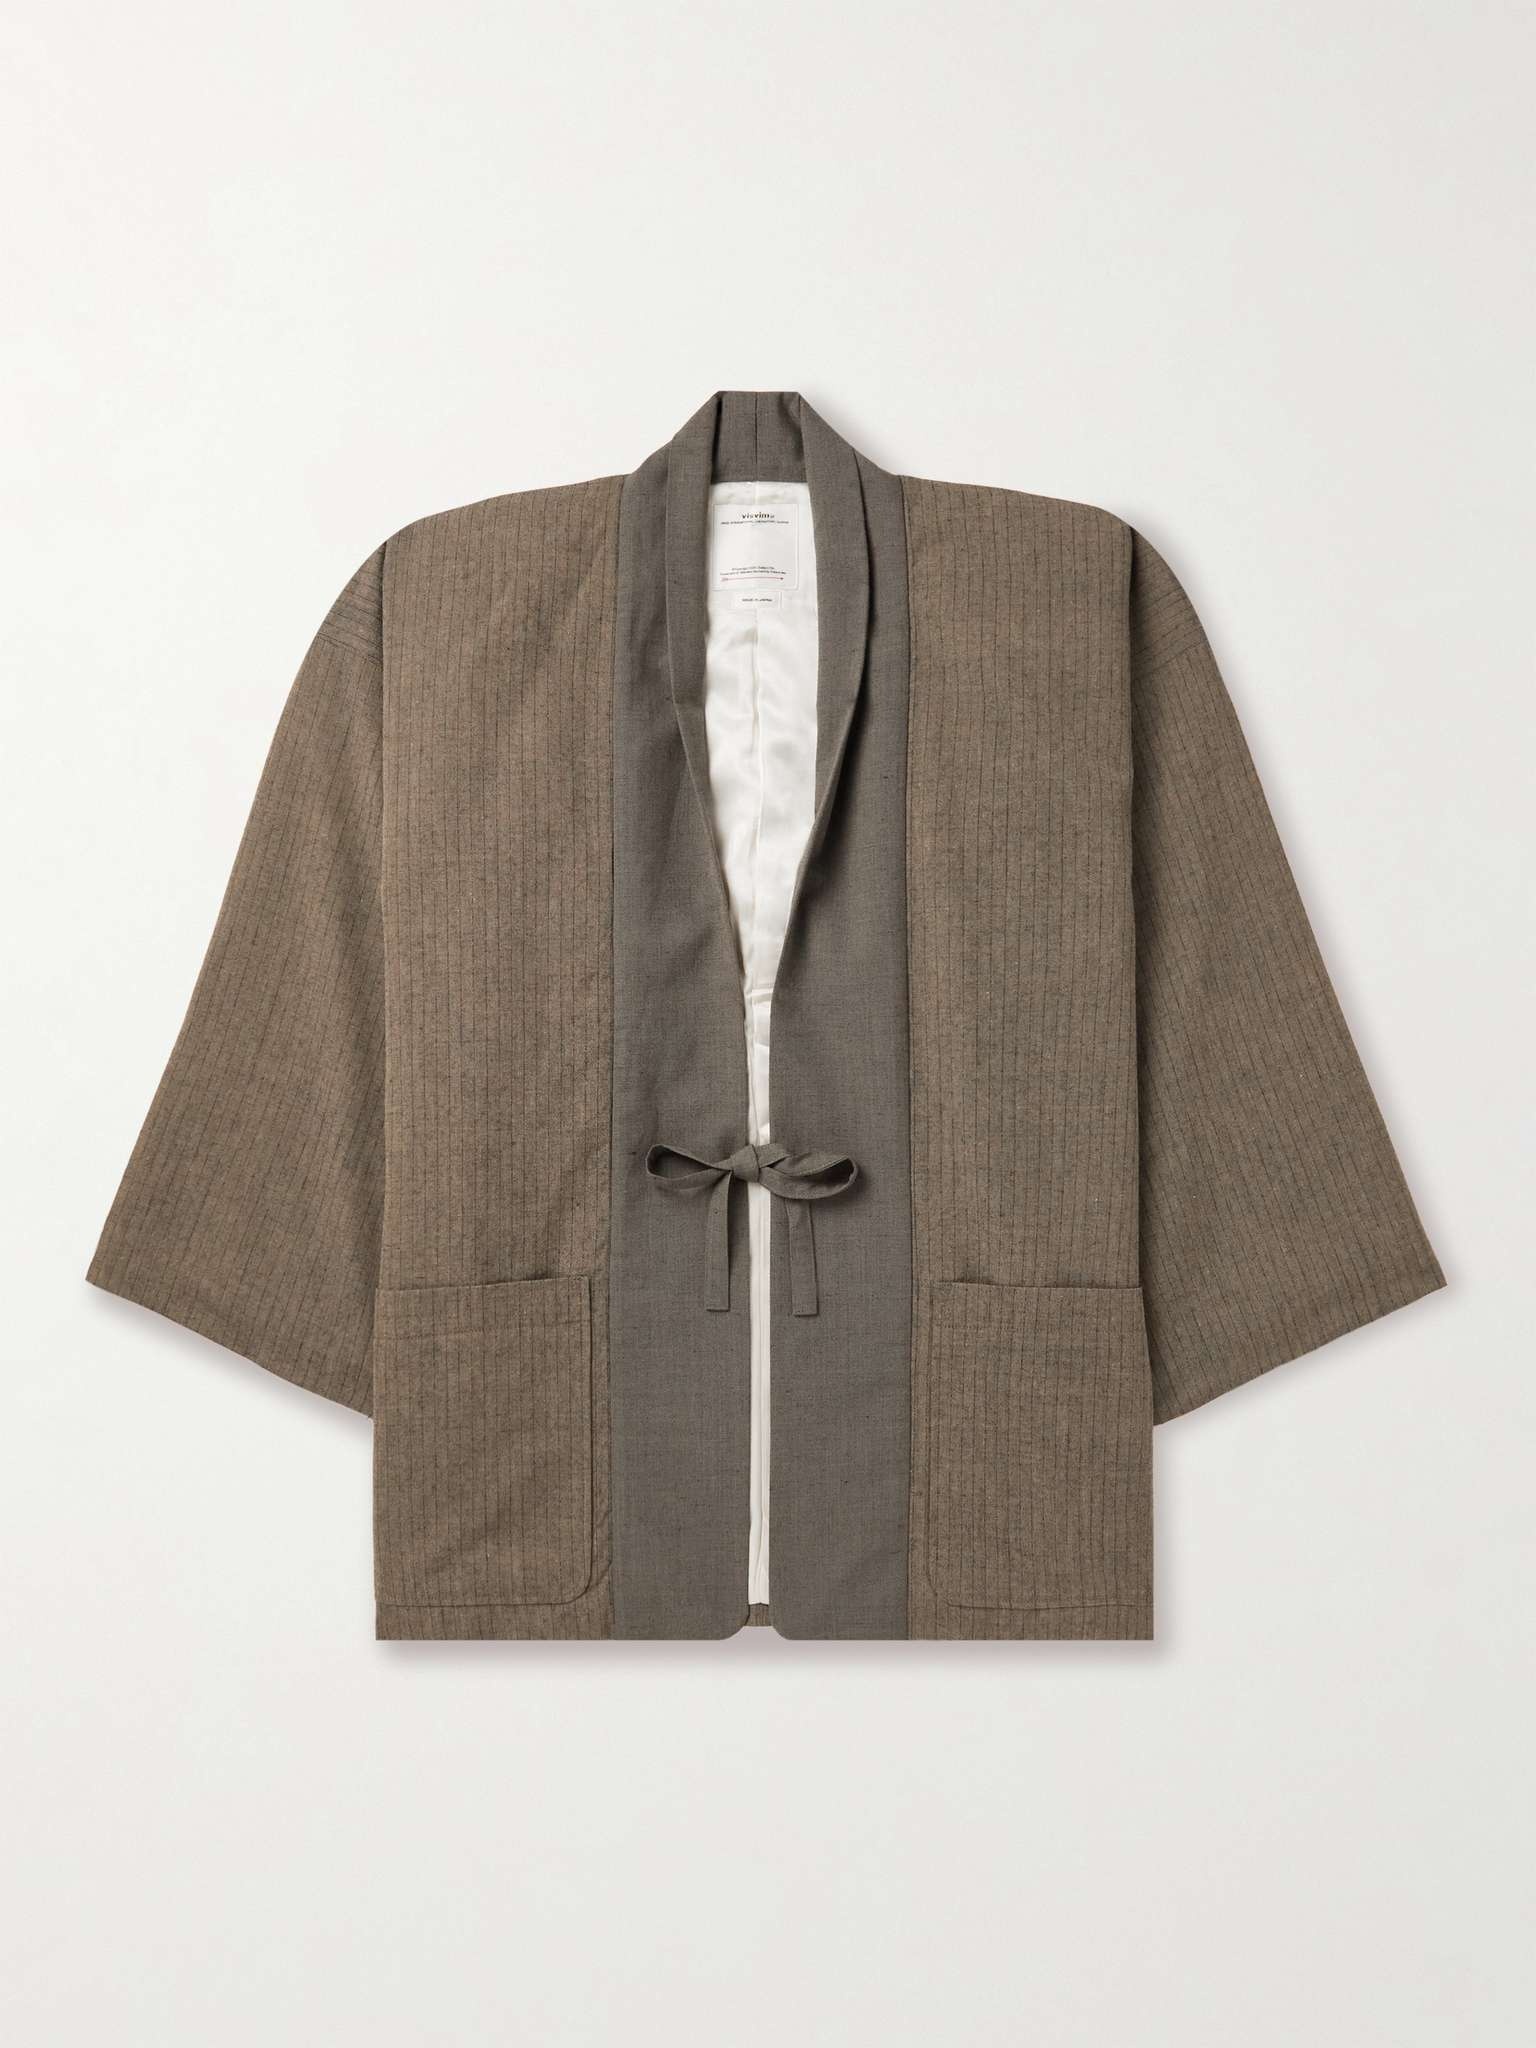 visvim Kiyari Striped Padded Wool, Linen and Cotton-Blend Tweed